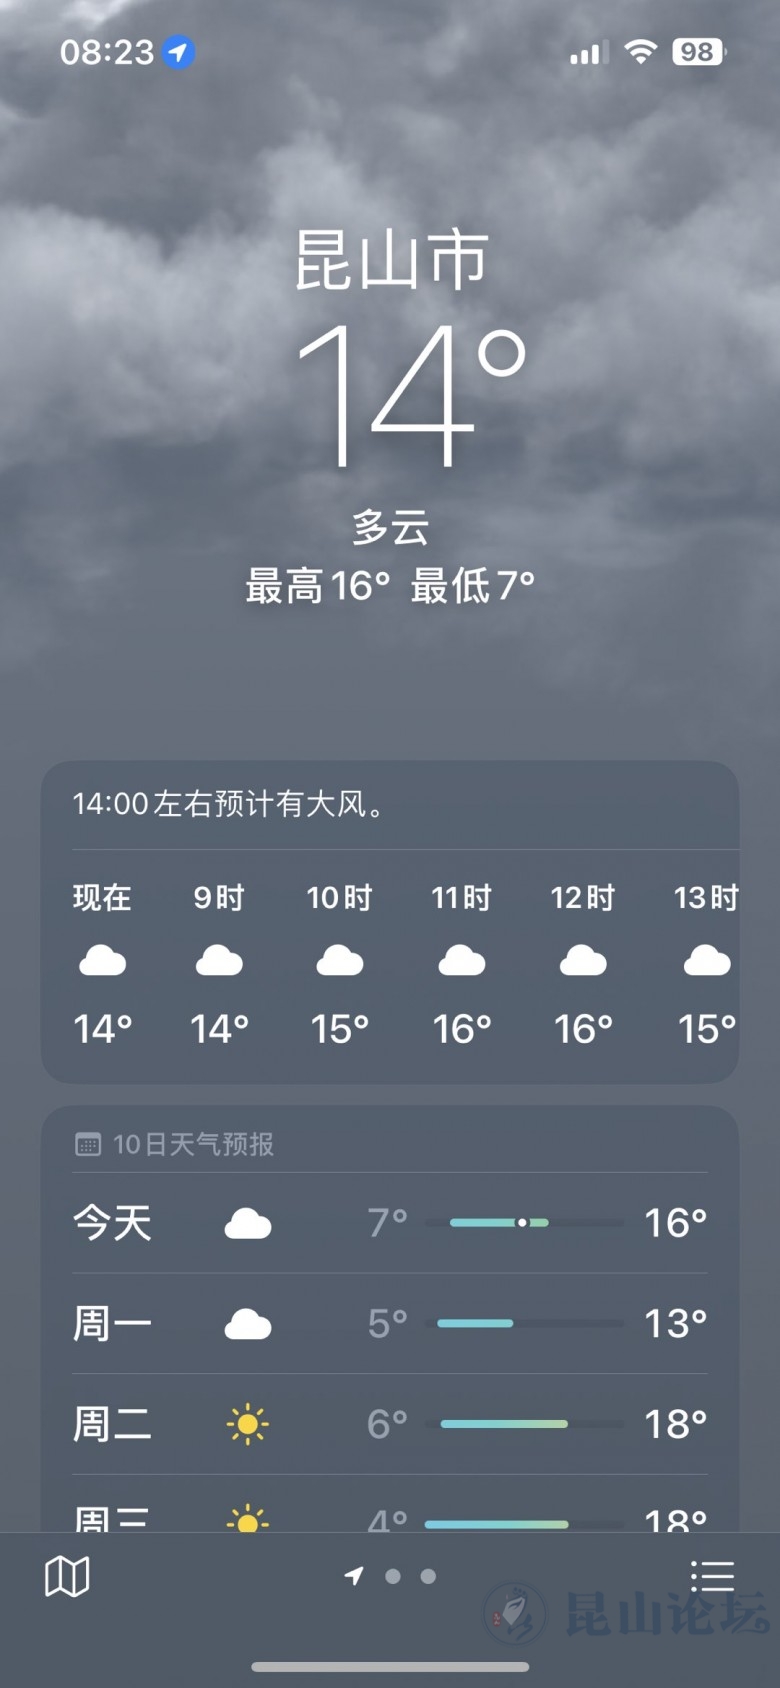 3月17日天气预报:昆山最高气温16度,今天有小雨